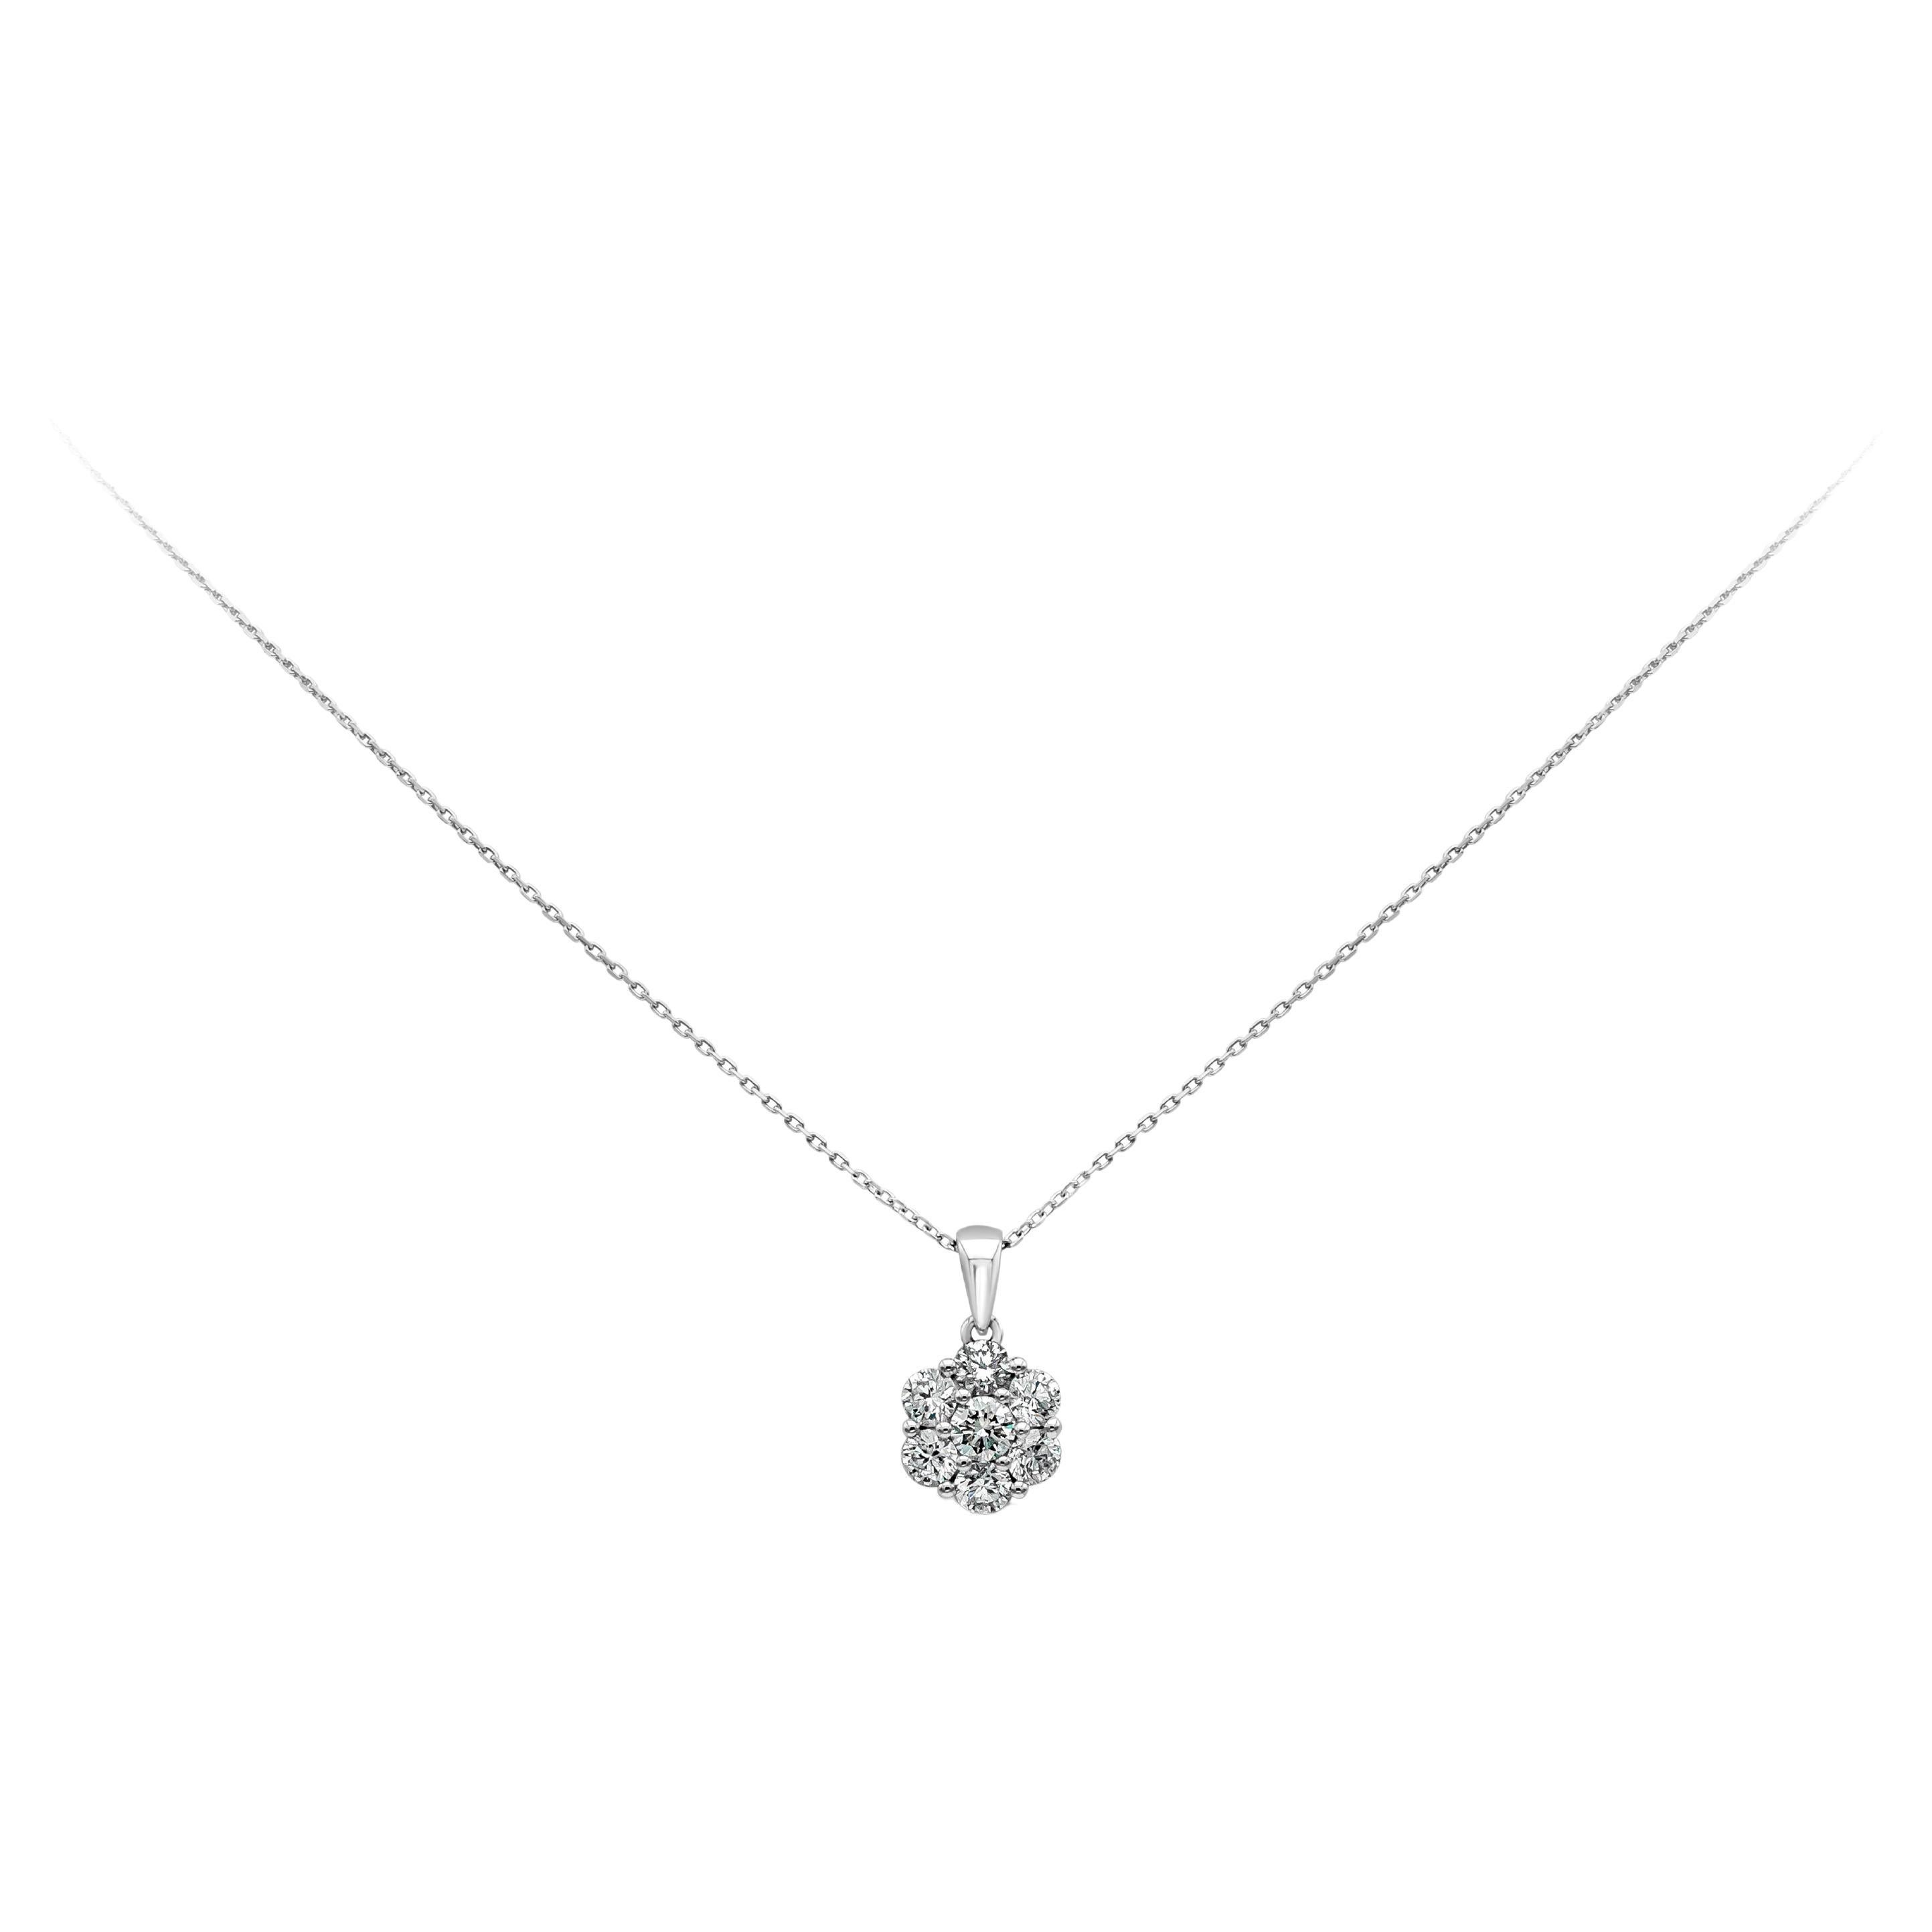 Roman Malakov, collier pendentif fleur en diamants ronds brillants de 1 carat au total